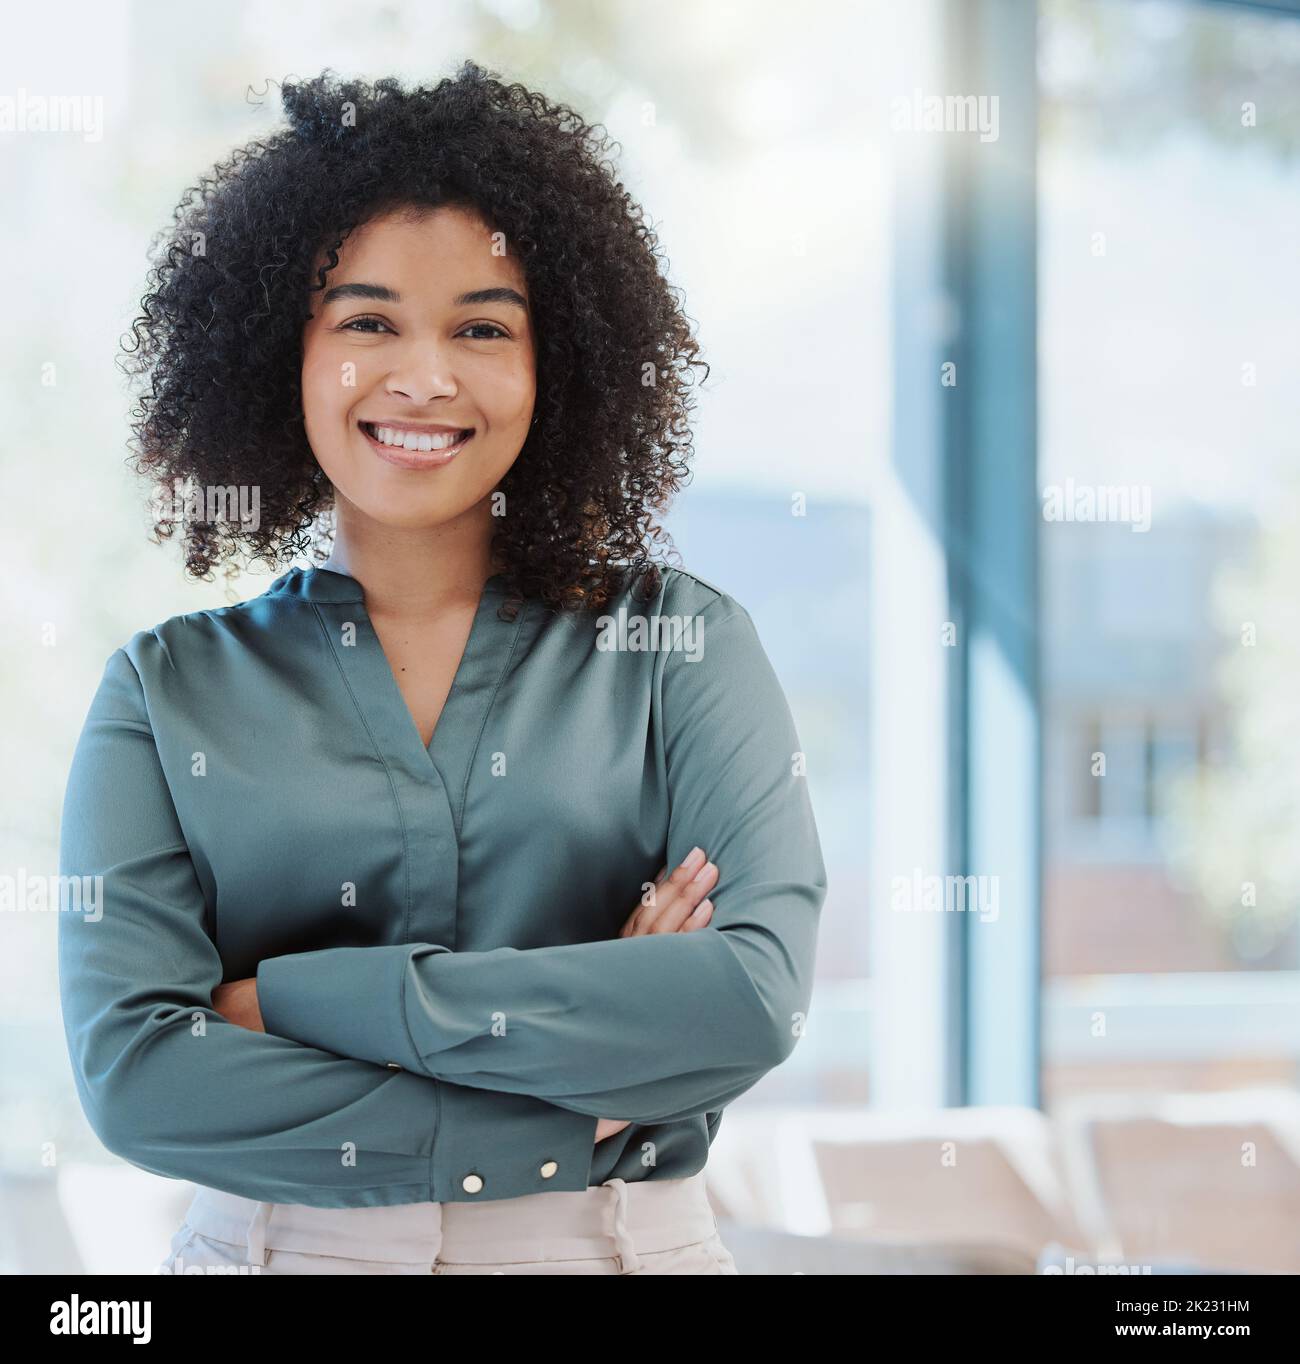 Glückliches Lächeln des Personalmanagers, Führung und Vision für den Erfolg. Porträt einer schwarzen Geschäftsfrau, die Arme gekreuzt, lächelnd und fühlend stehend Stockfoto